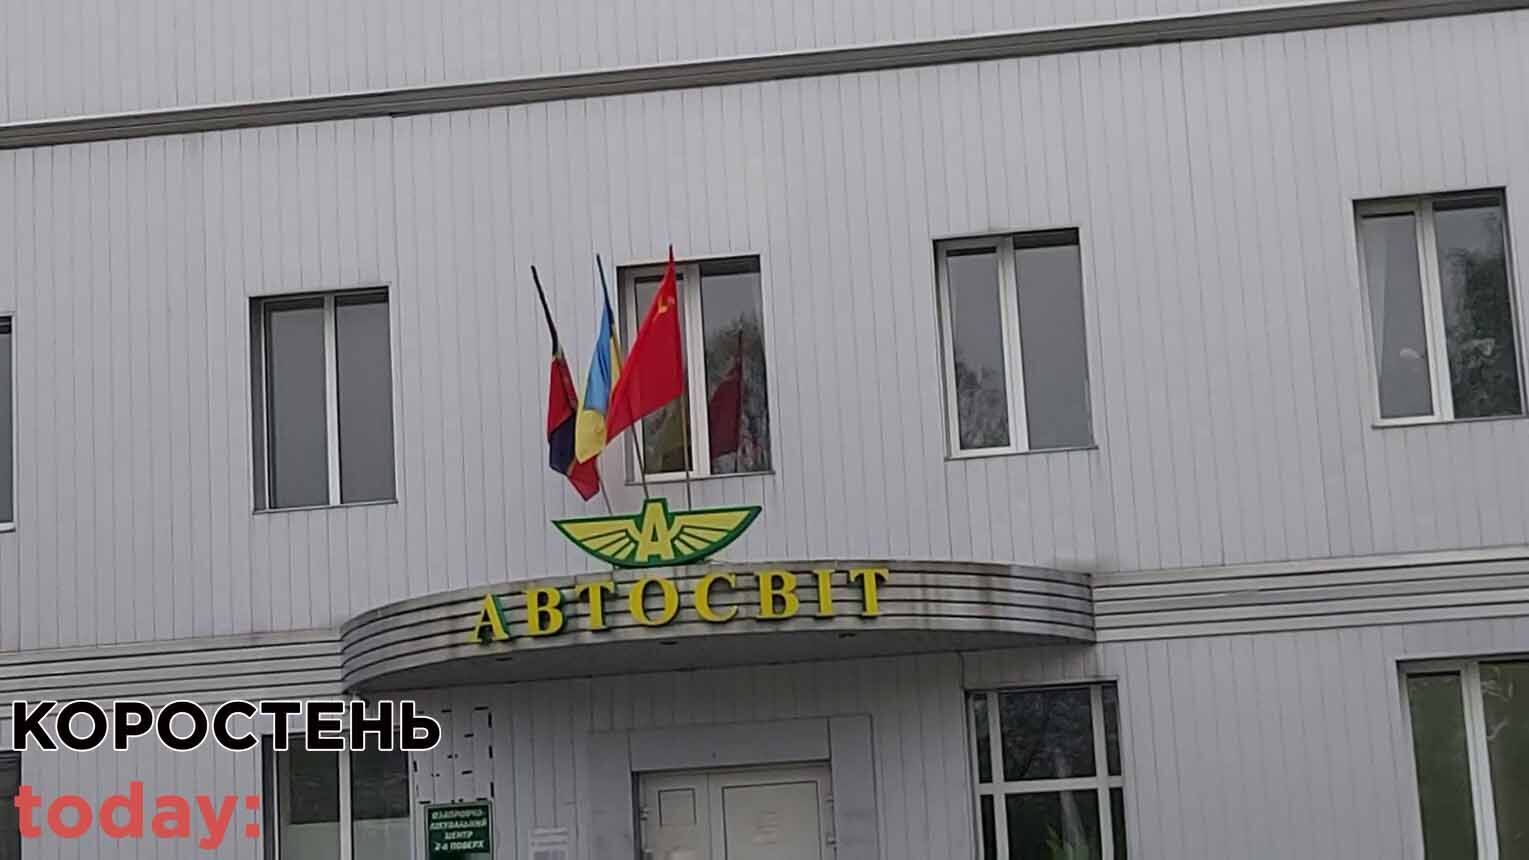 ТОВ "Автосвіт" розмістило біля входу прапор Радянського Союзу.